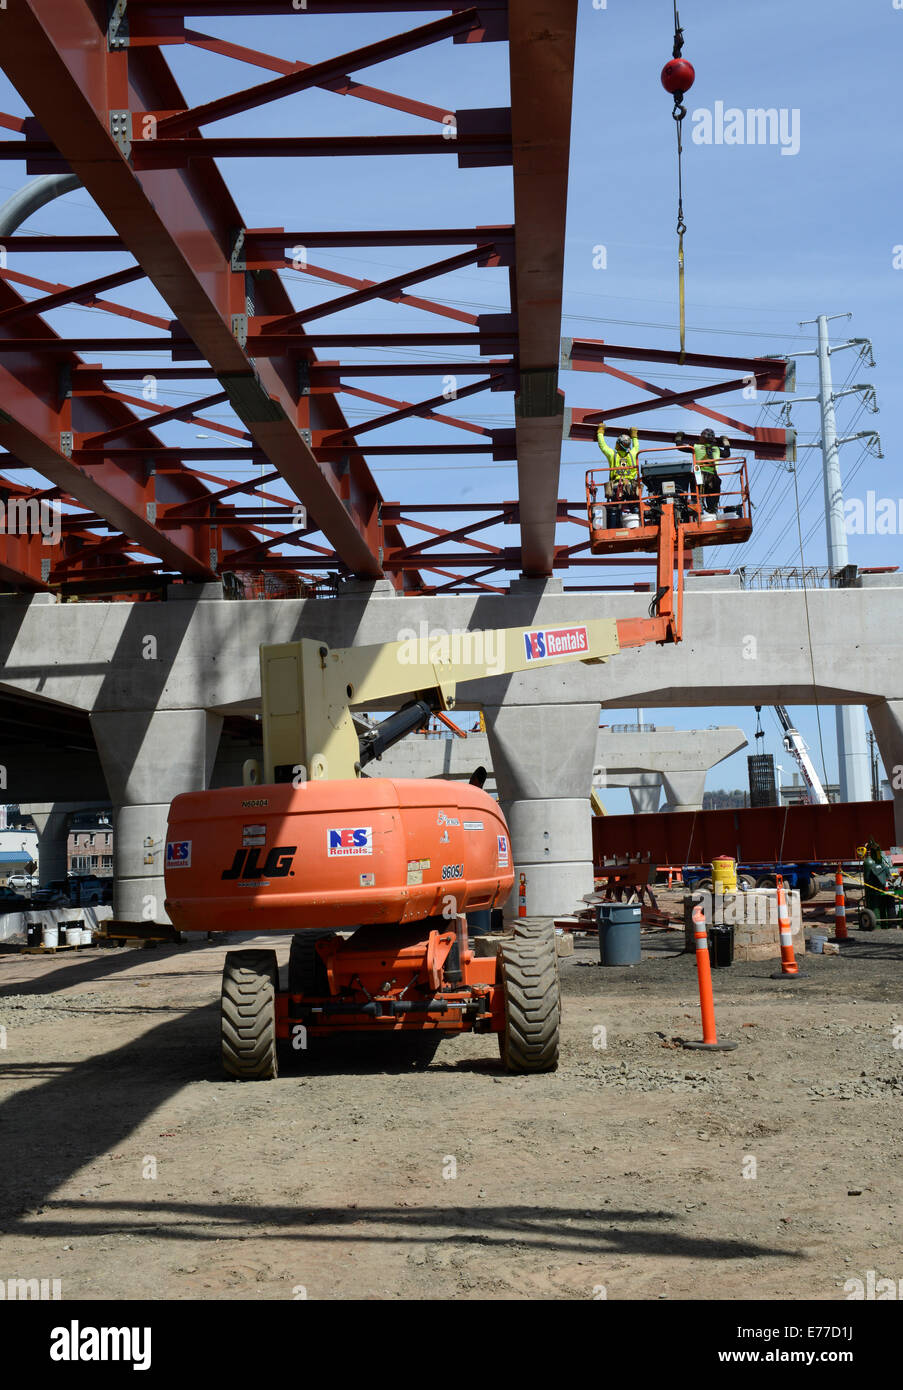 Travailleurs en fer sur une plate-forme de levage préparez-vous à fixer de nouvelles poutres en acier pour la construction d'un nouveau pont sur le projet de port de New Haven. Banque D'Images